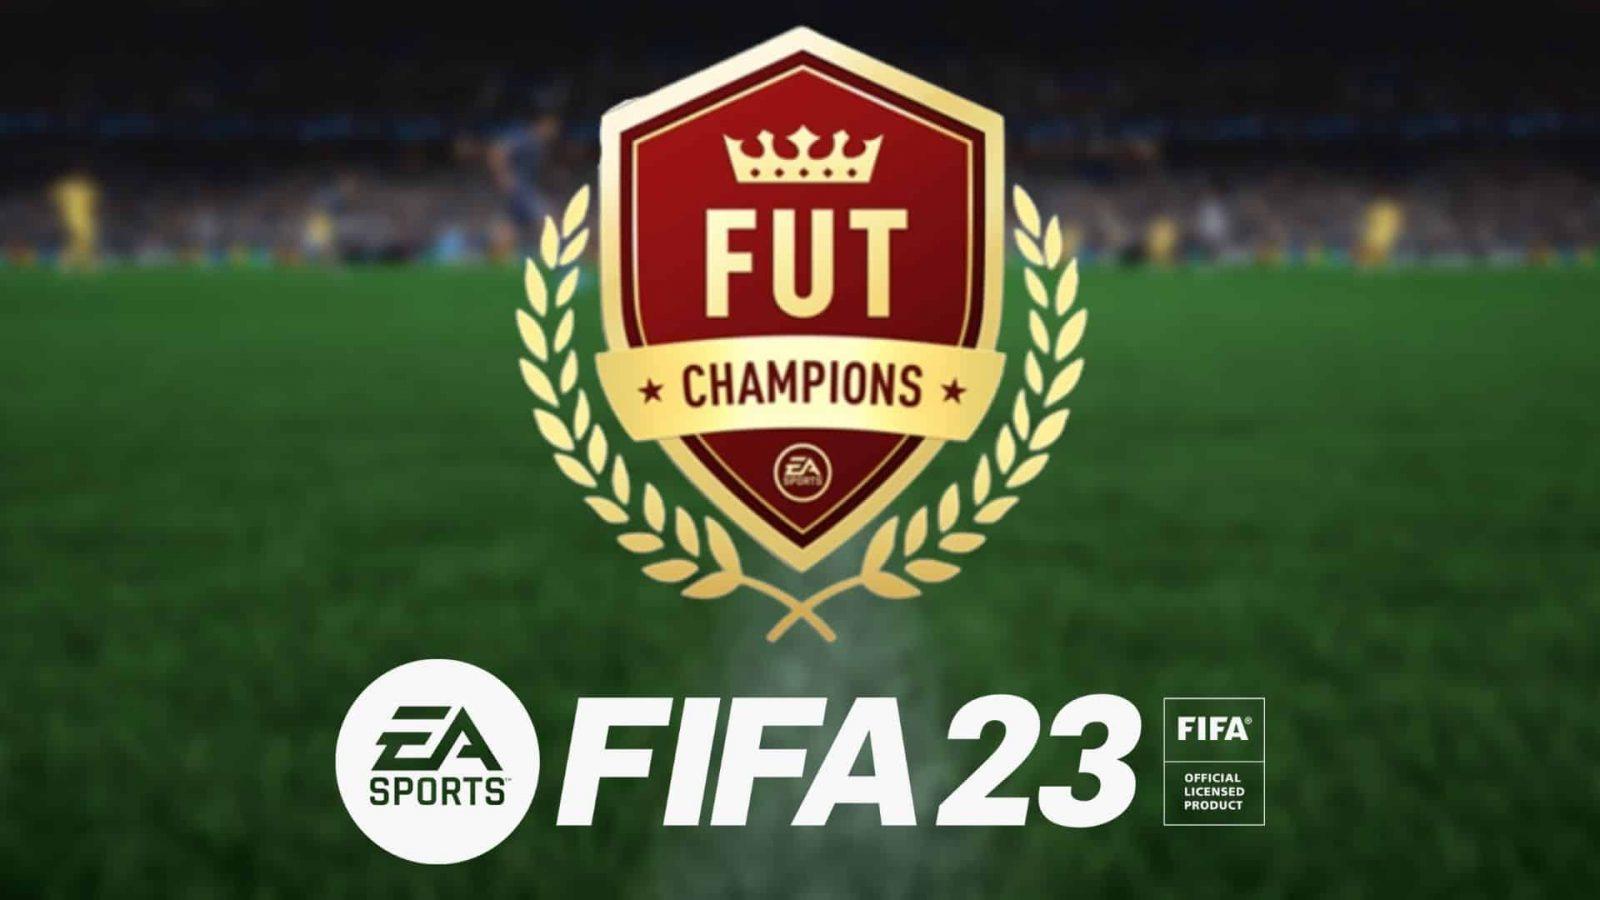 fut champs and fifa 23 logo